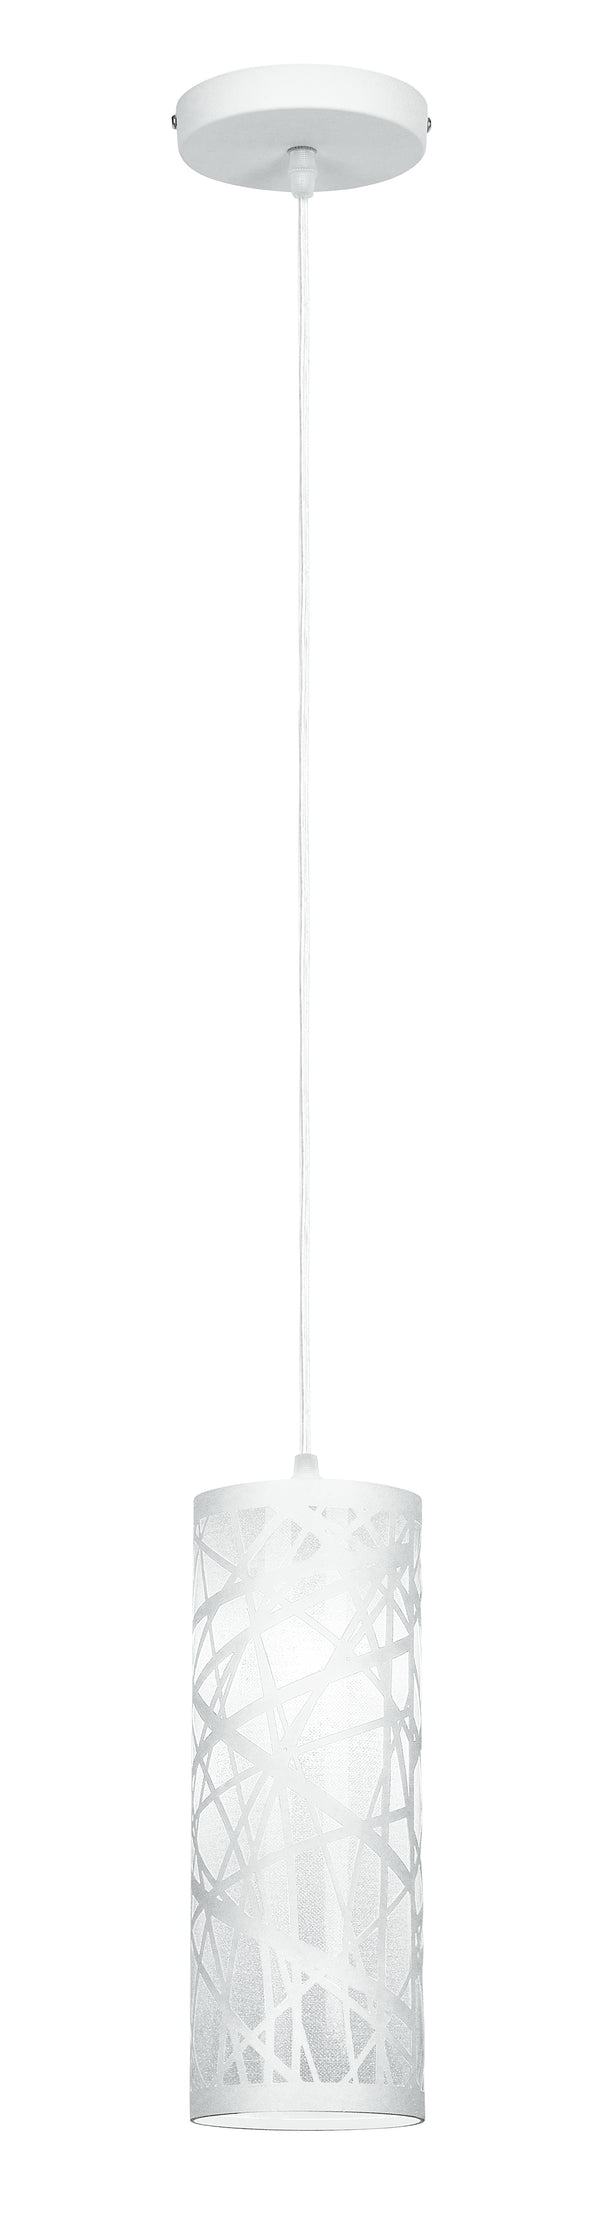 Sospensione Cilindrica Acciaio Bianco decoro Astratto Intagliato Interno Moderno E27 acquista